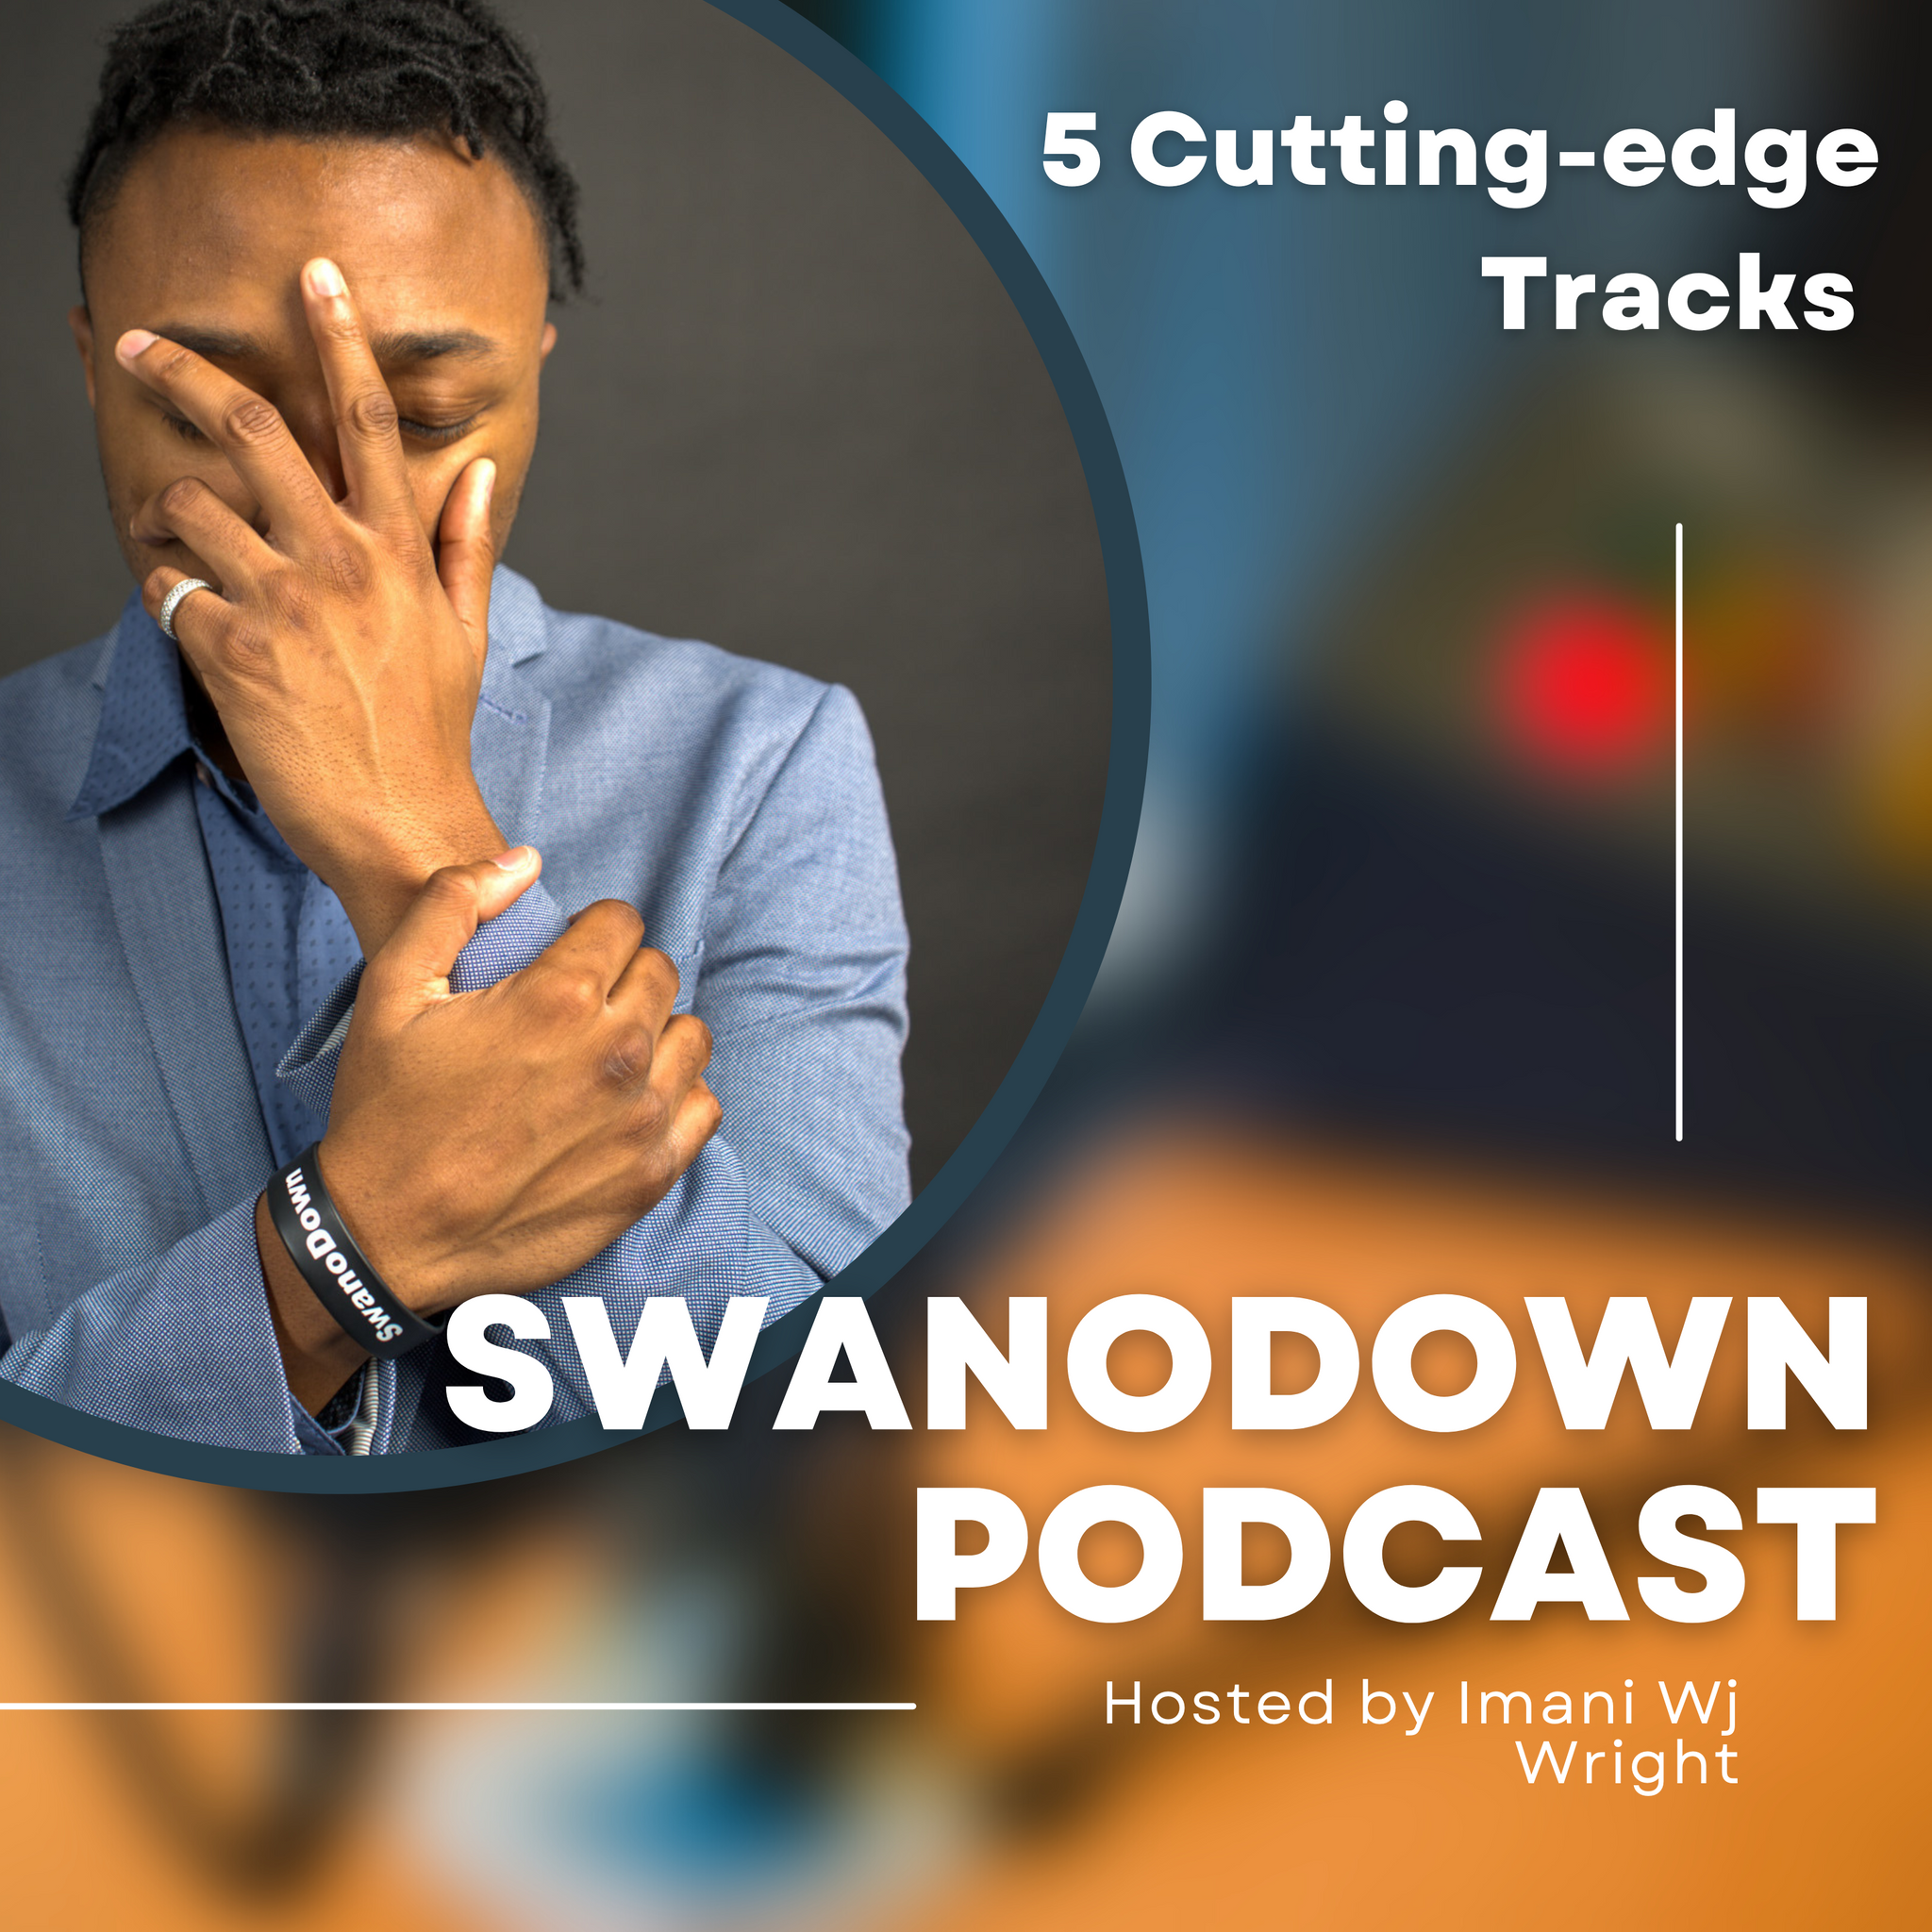 SwanoDown Podcast ep10- Hosted by Imani Wj Wright & AnAlyzer